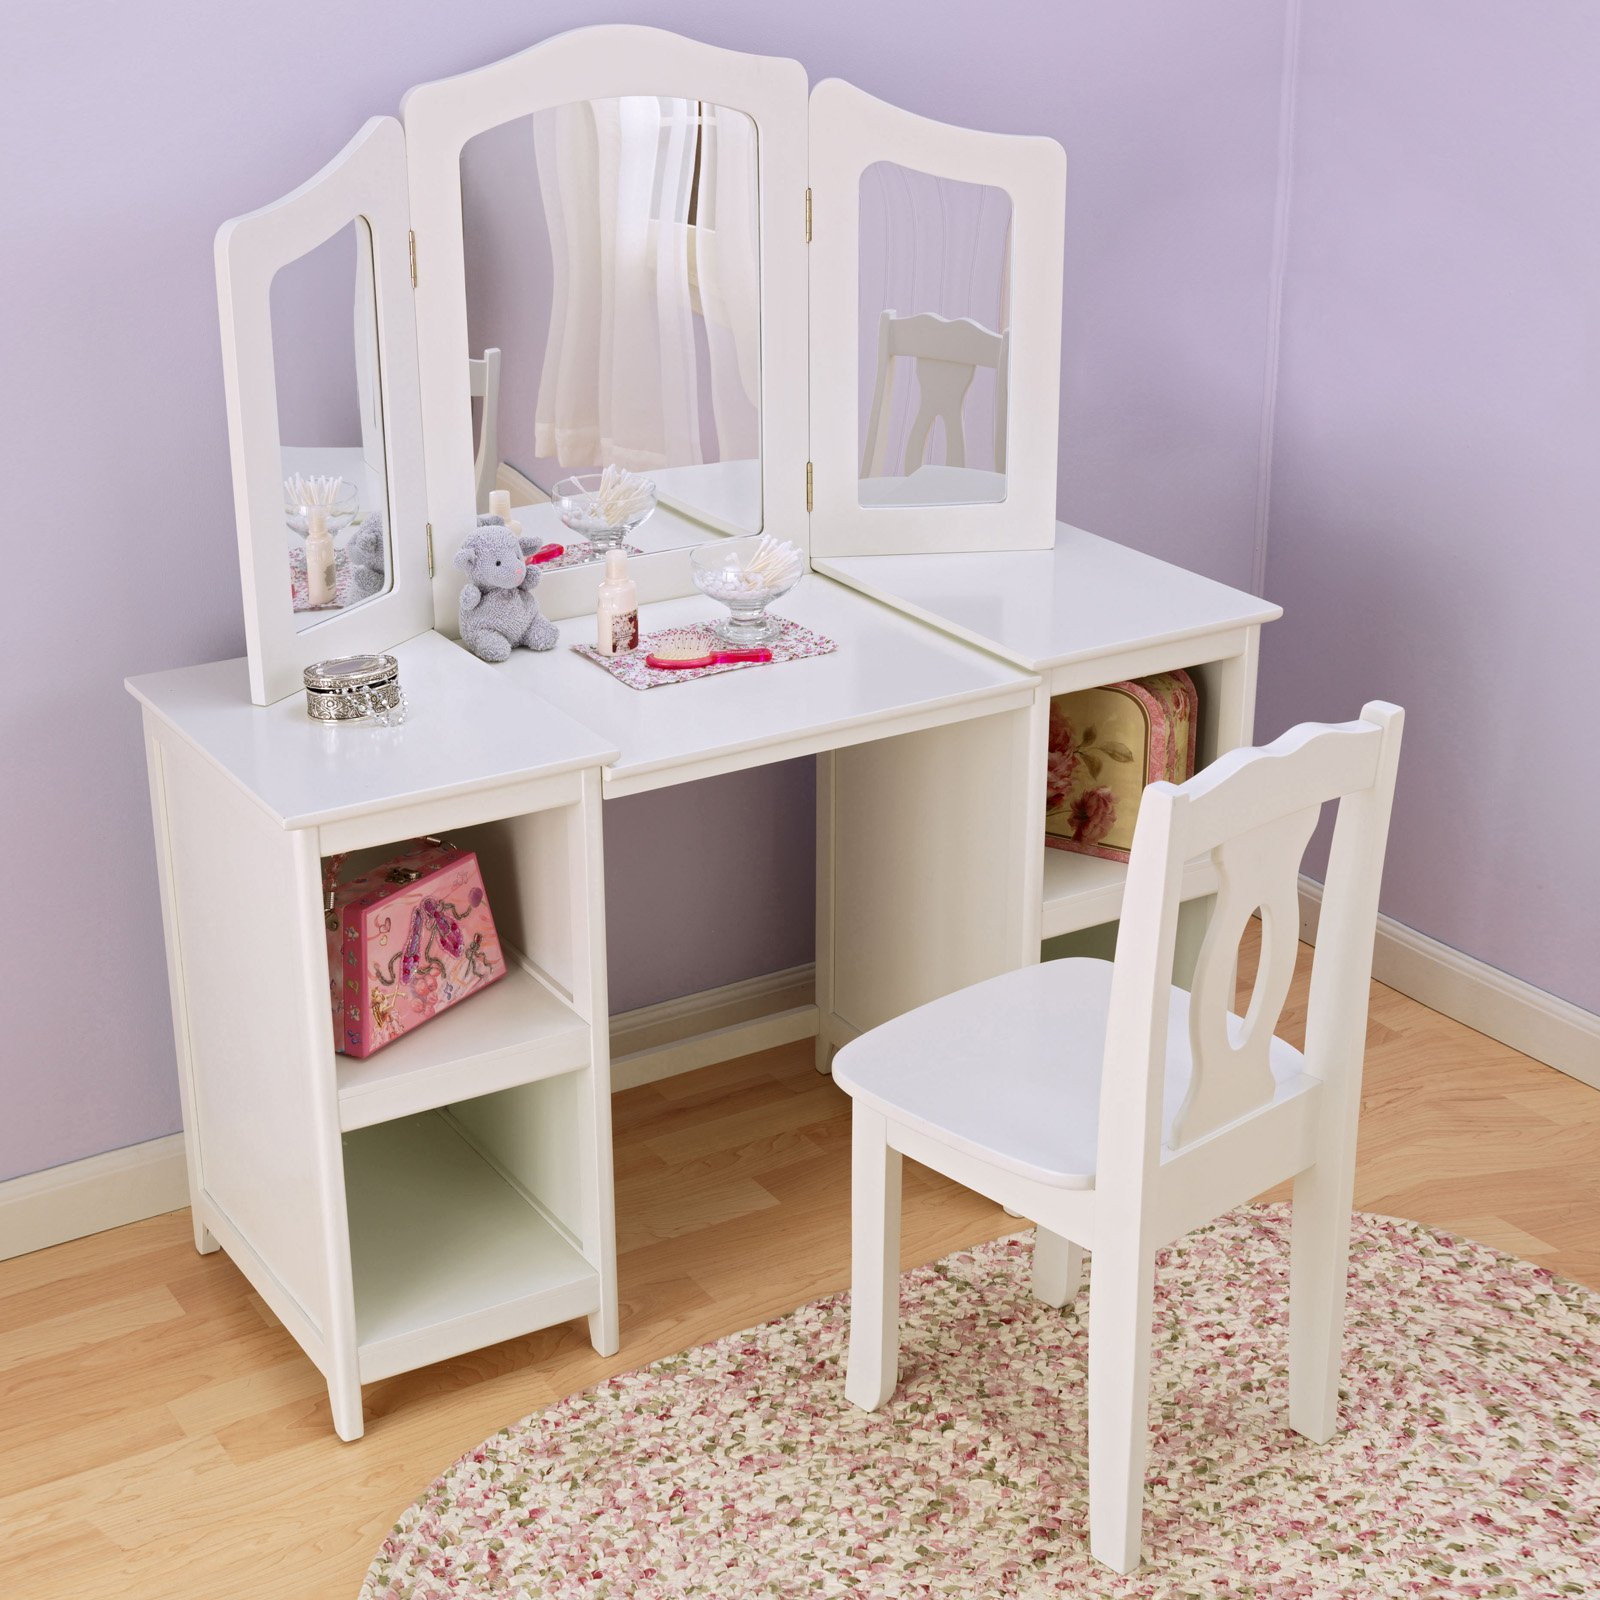 Girls Bedroom Vanity
 KidKraft Deluxe Vanity & Chair Kids Bedroom